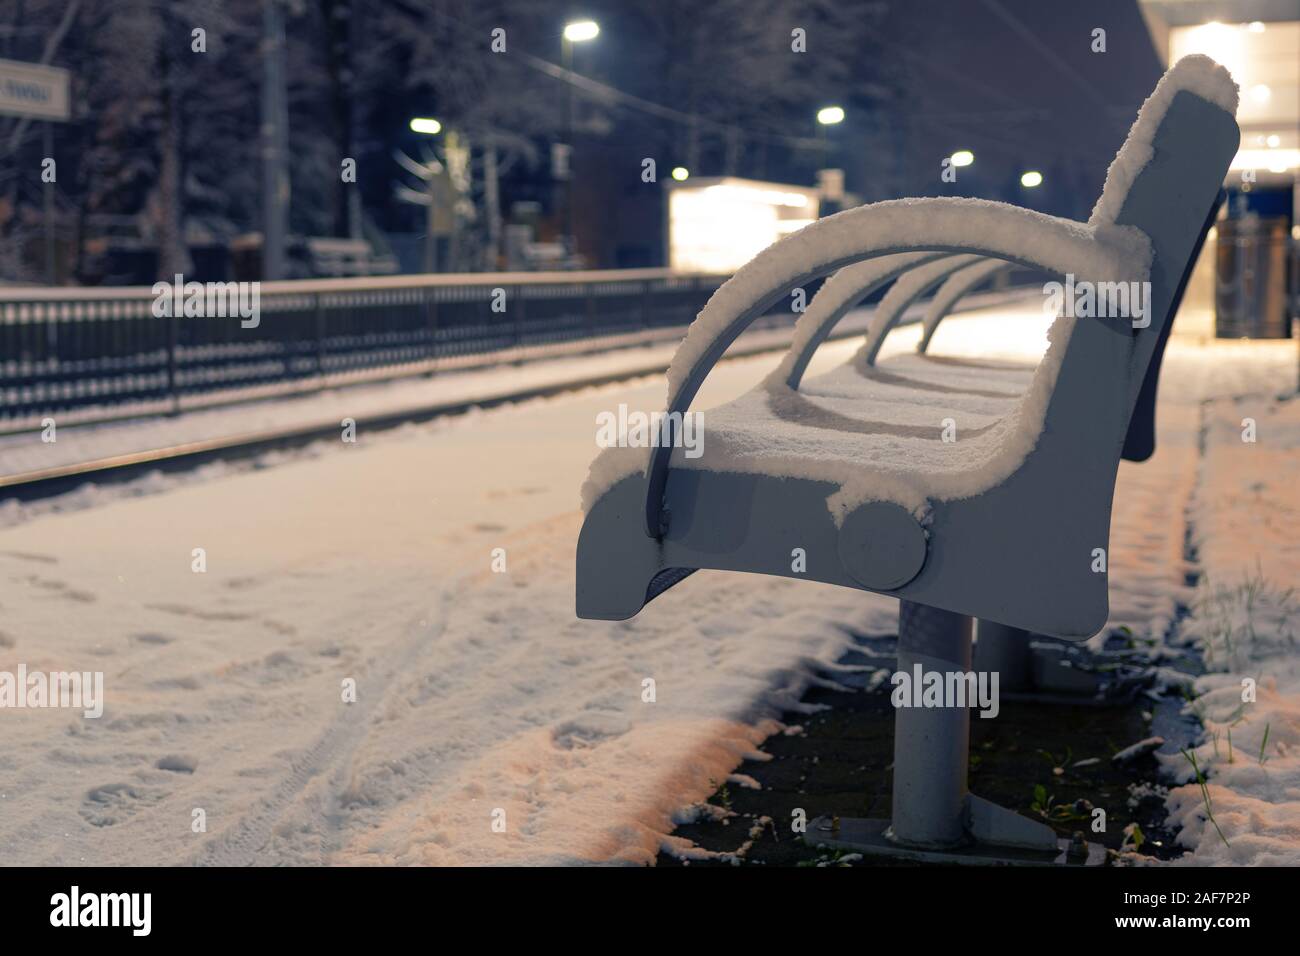 Banco de Vacantes cubiertas de nieve en una estación de tren vacía durante la noche. Expectativa, soledad y conceptos de transporte Foto de stock